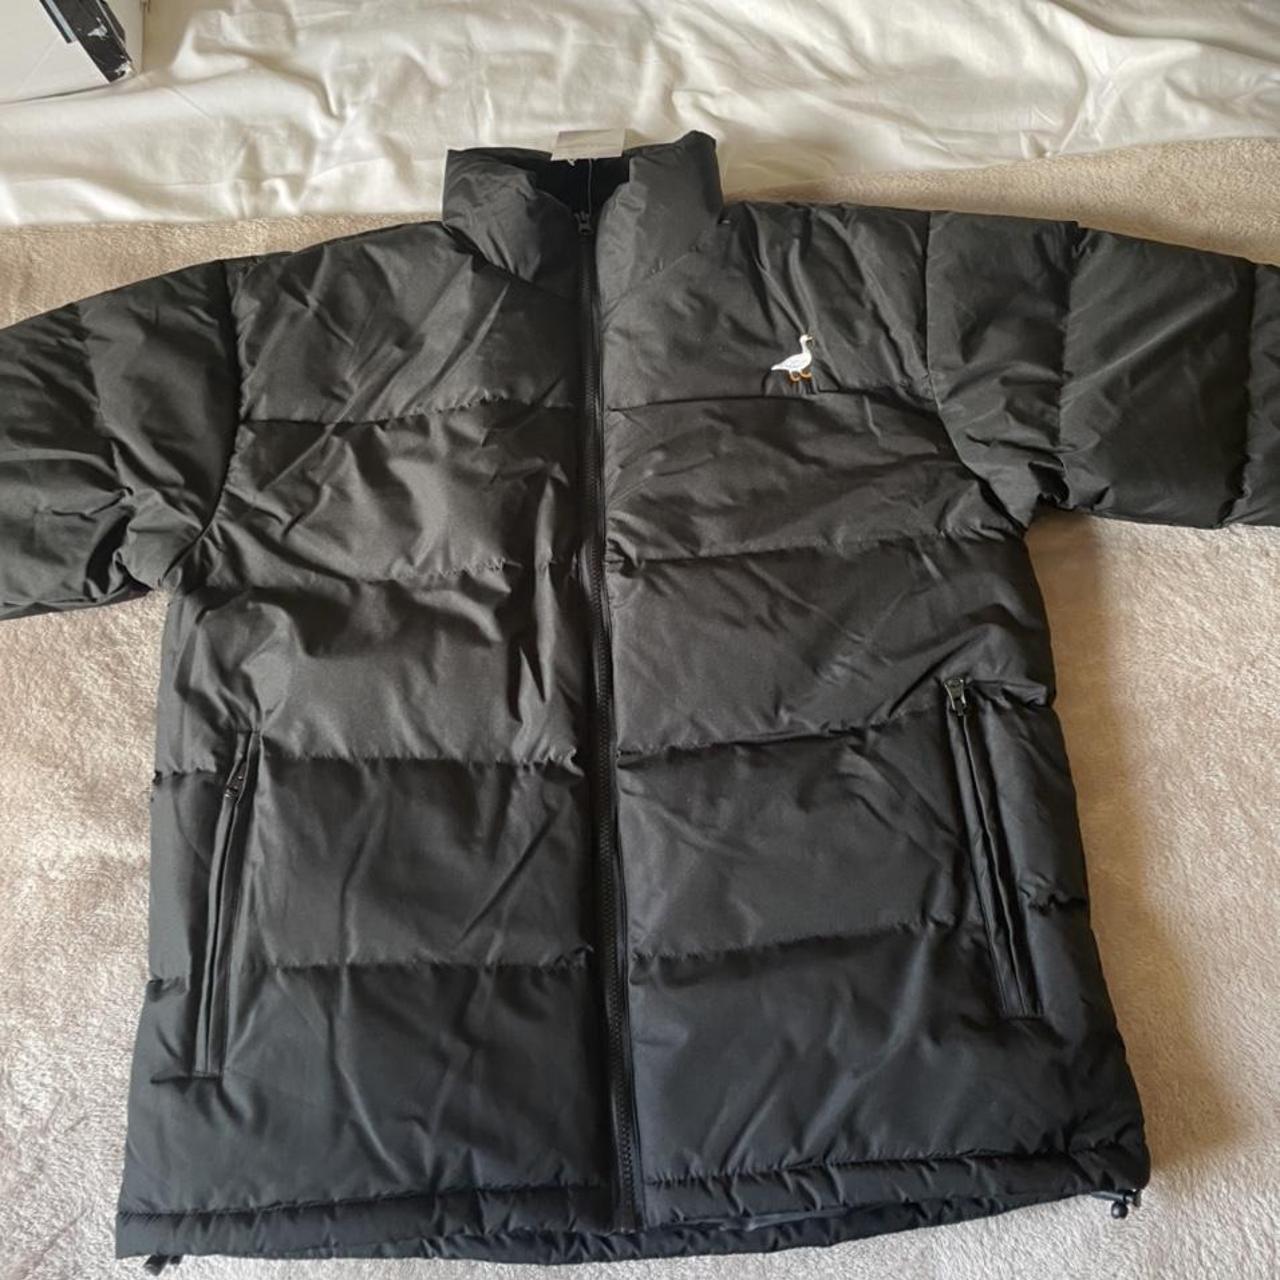 Goose and gander black unisex oversized jacket. Size... - Depop